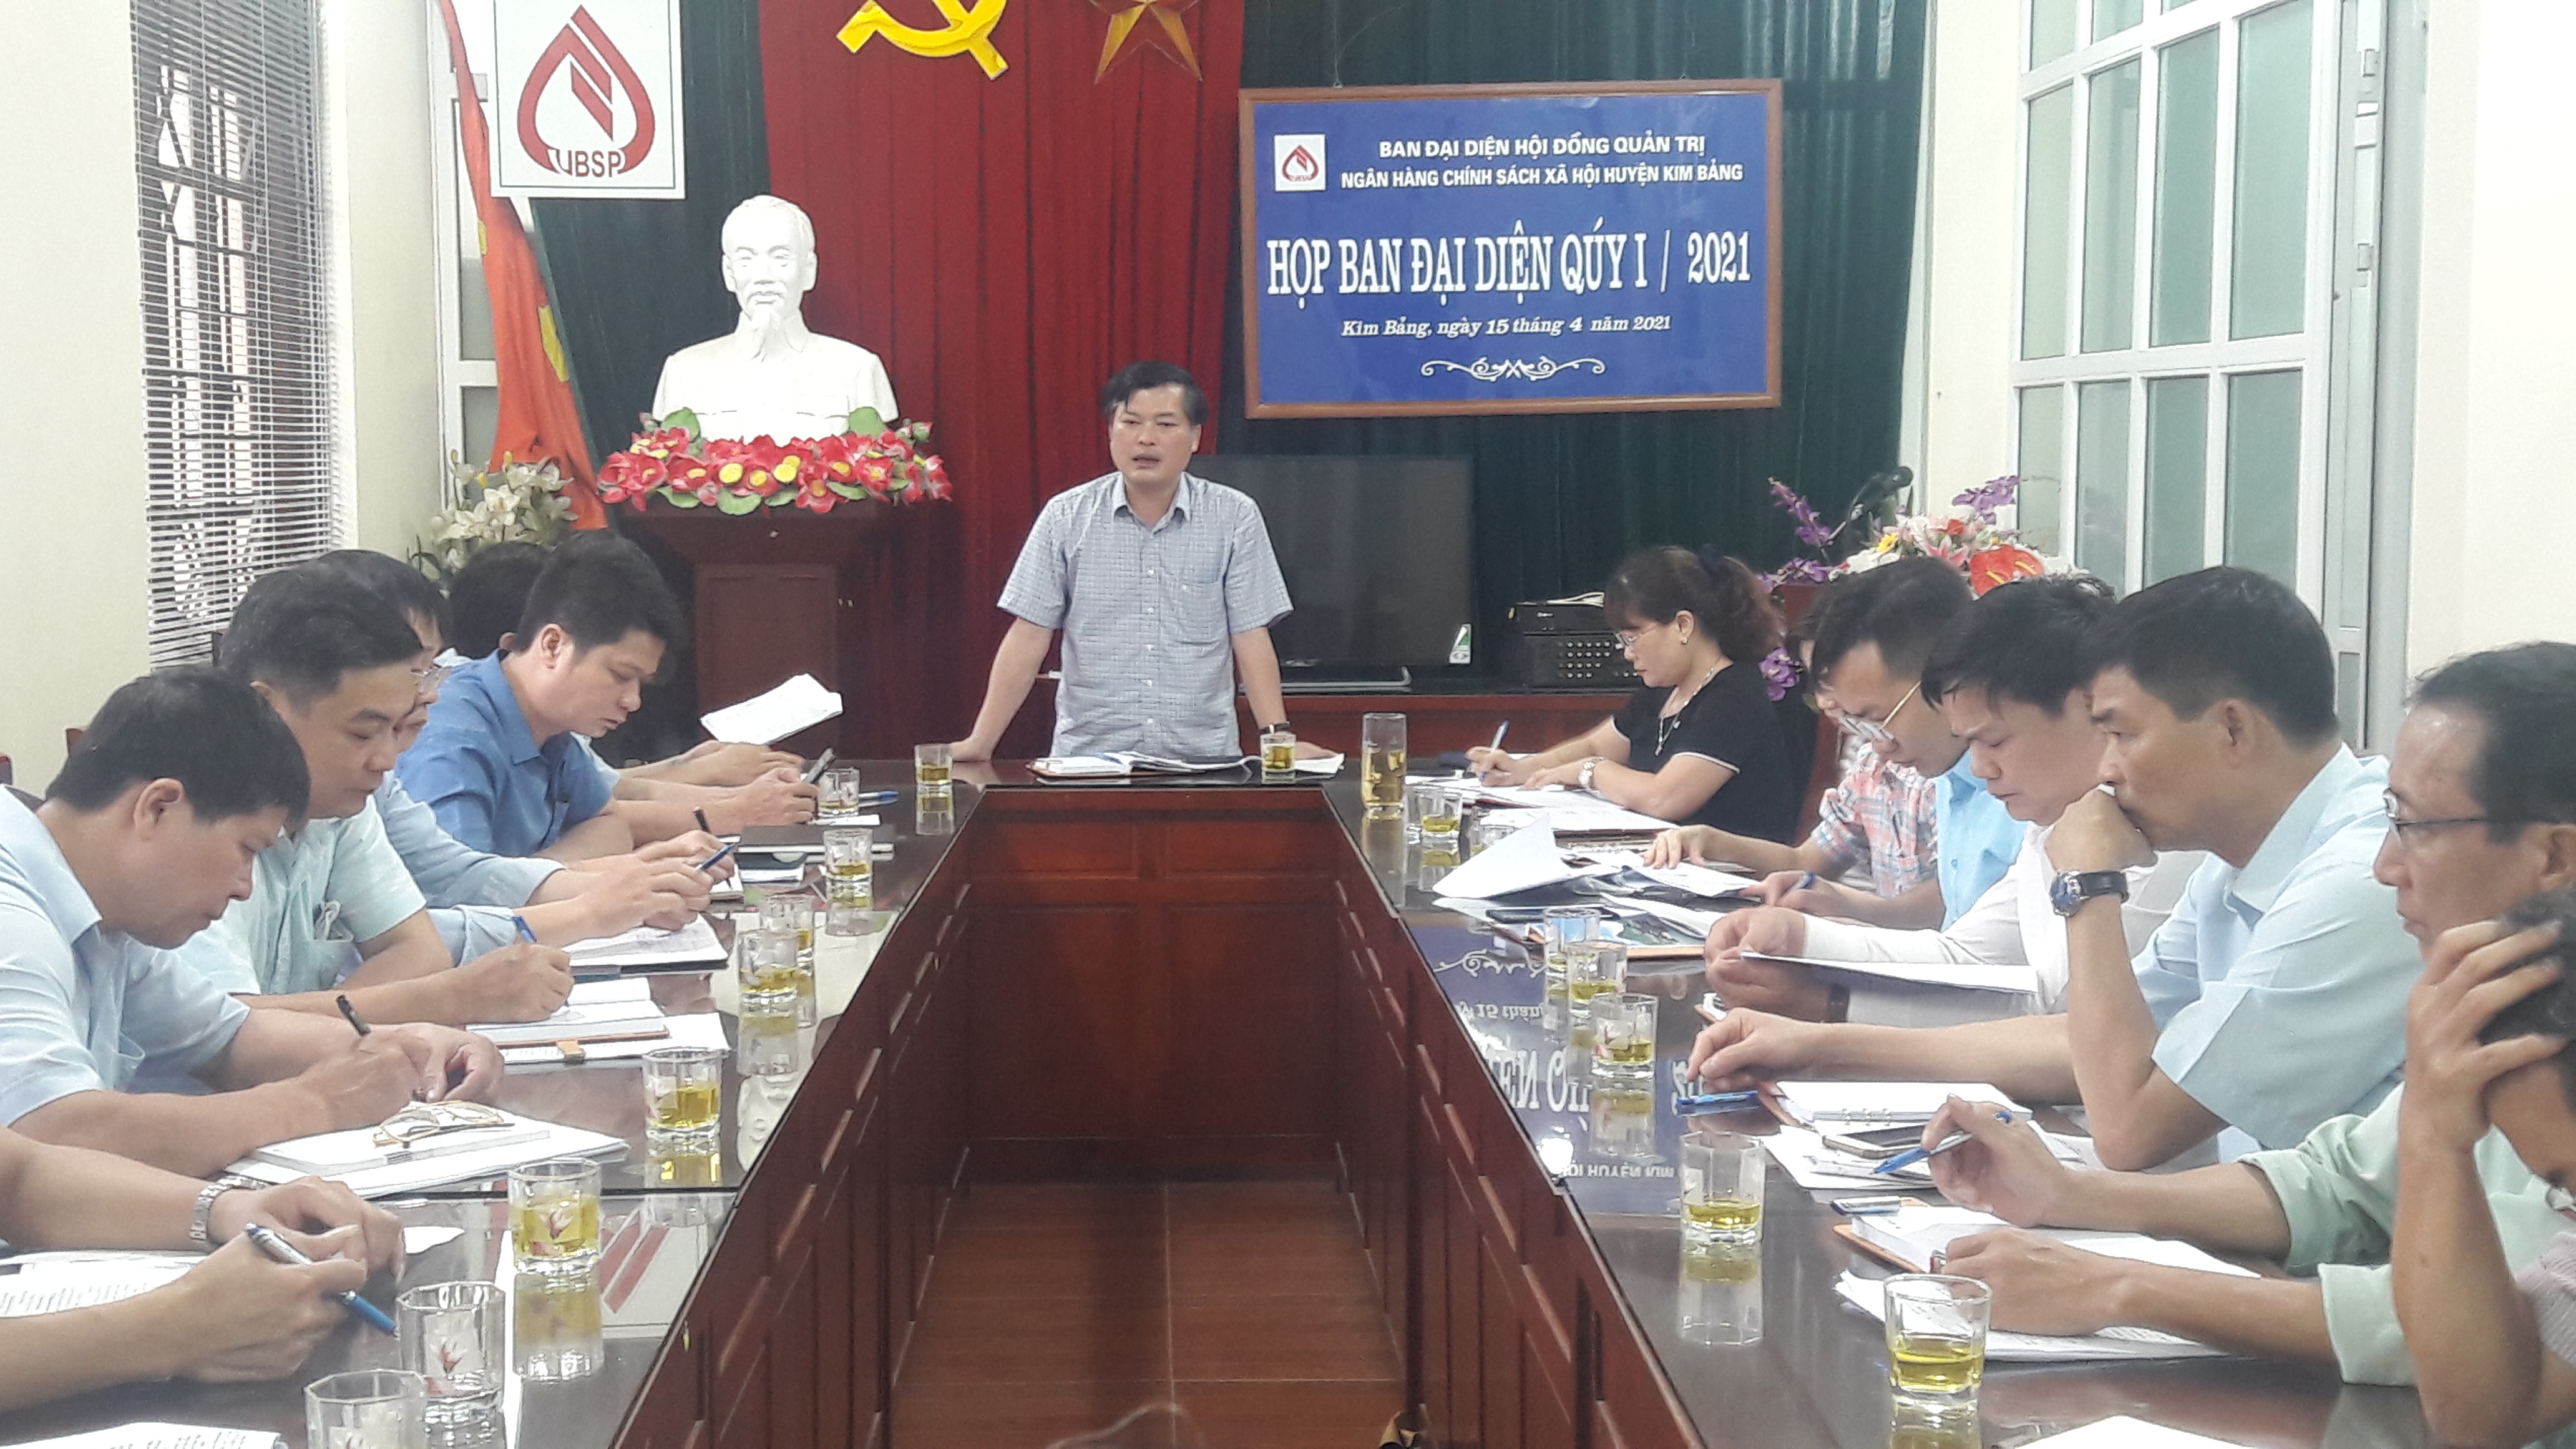 Đồng chí Nguyễn Hồng Sơn, phó chủ tịch UBND huyện phát biểu chỉ đạo hội nghị.jpg